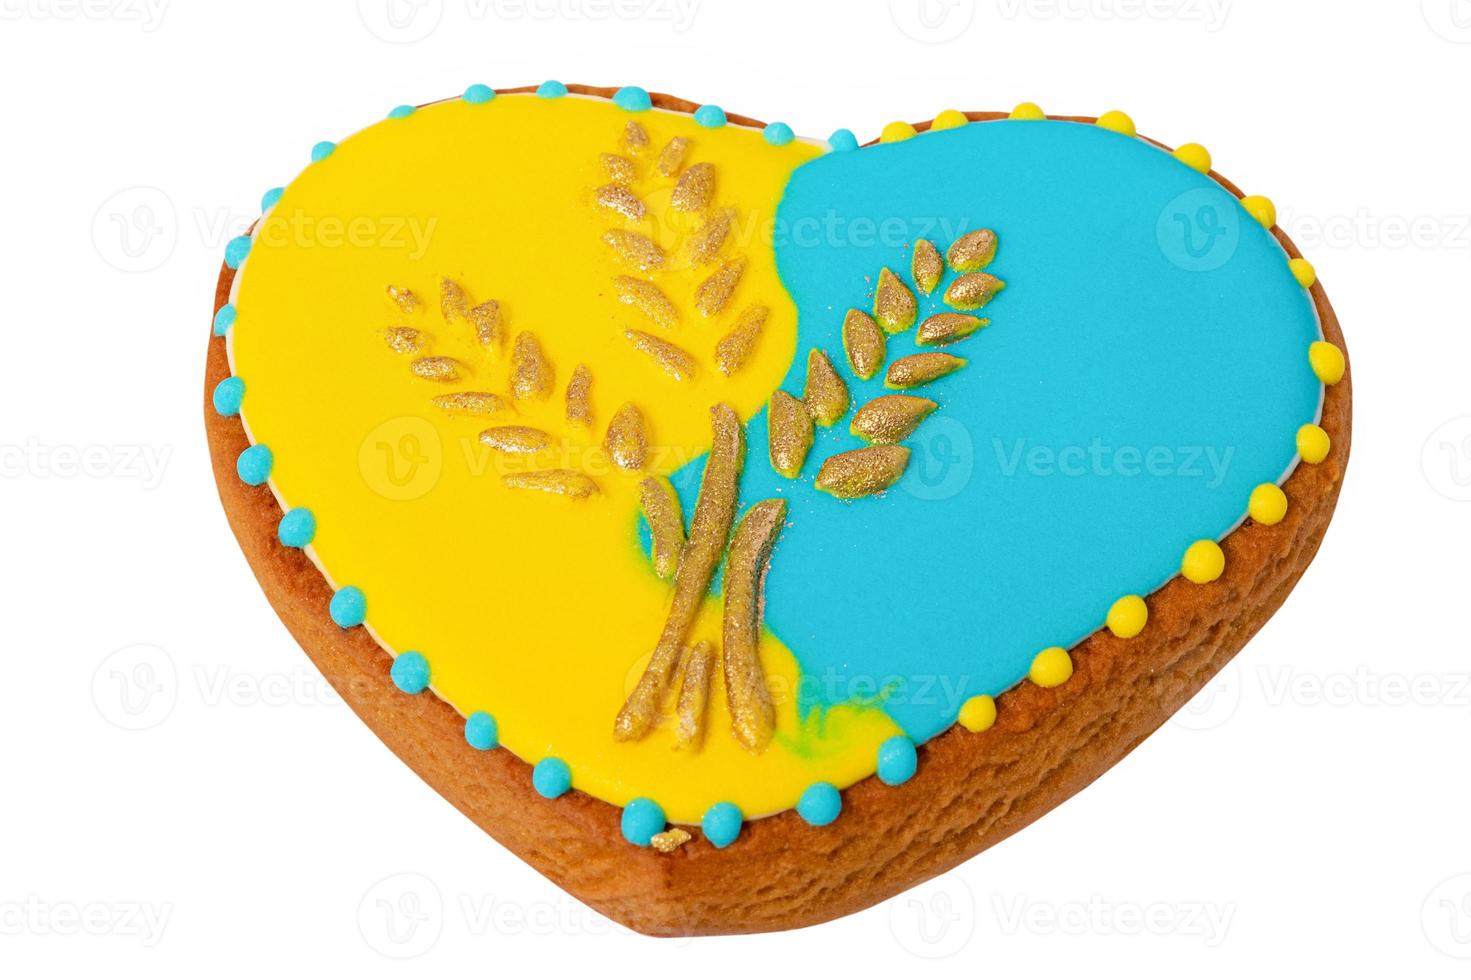 pain d'épice en forme de coeur aux couleurs jaunes et bleues avec épis de blé, style ukrainien. photo